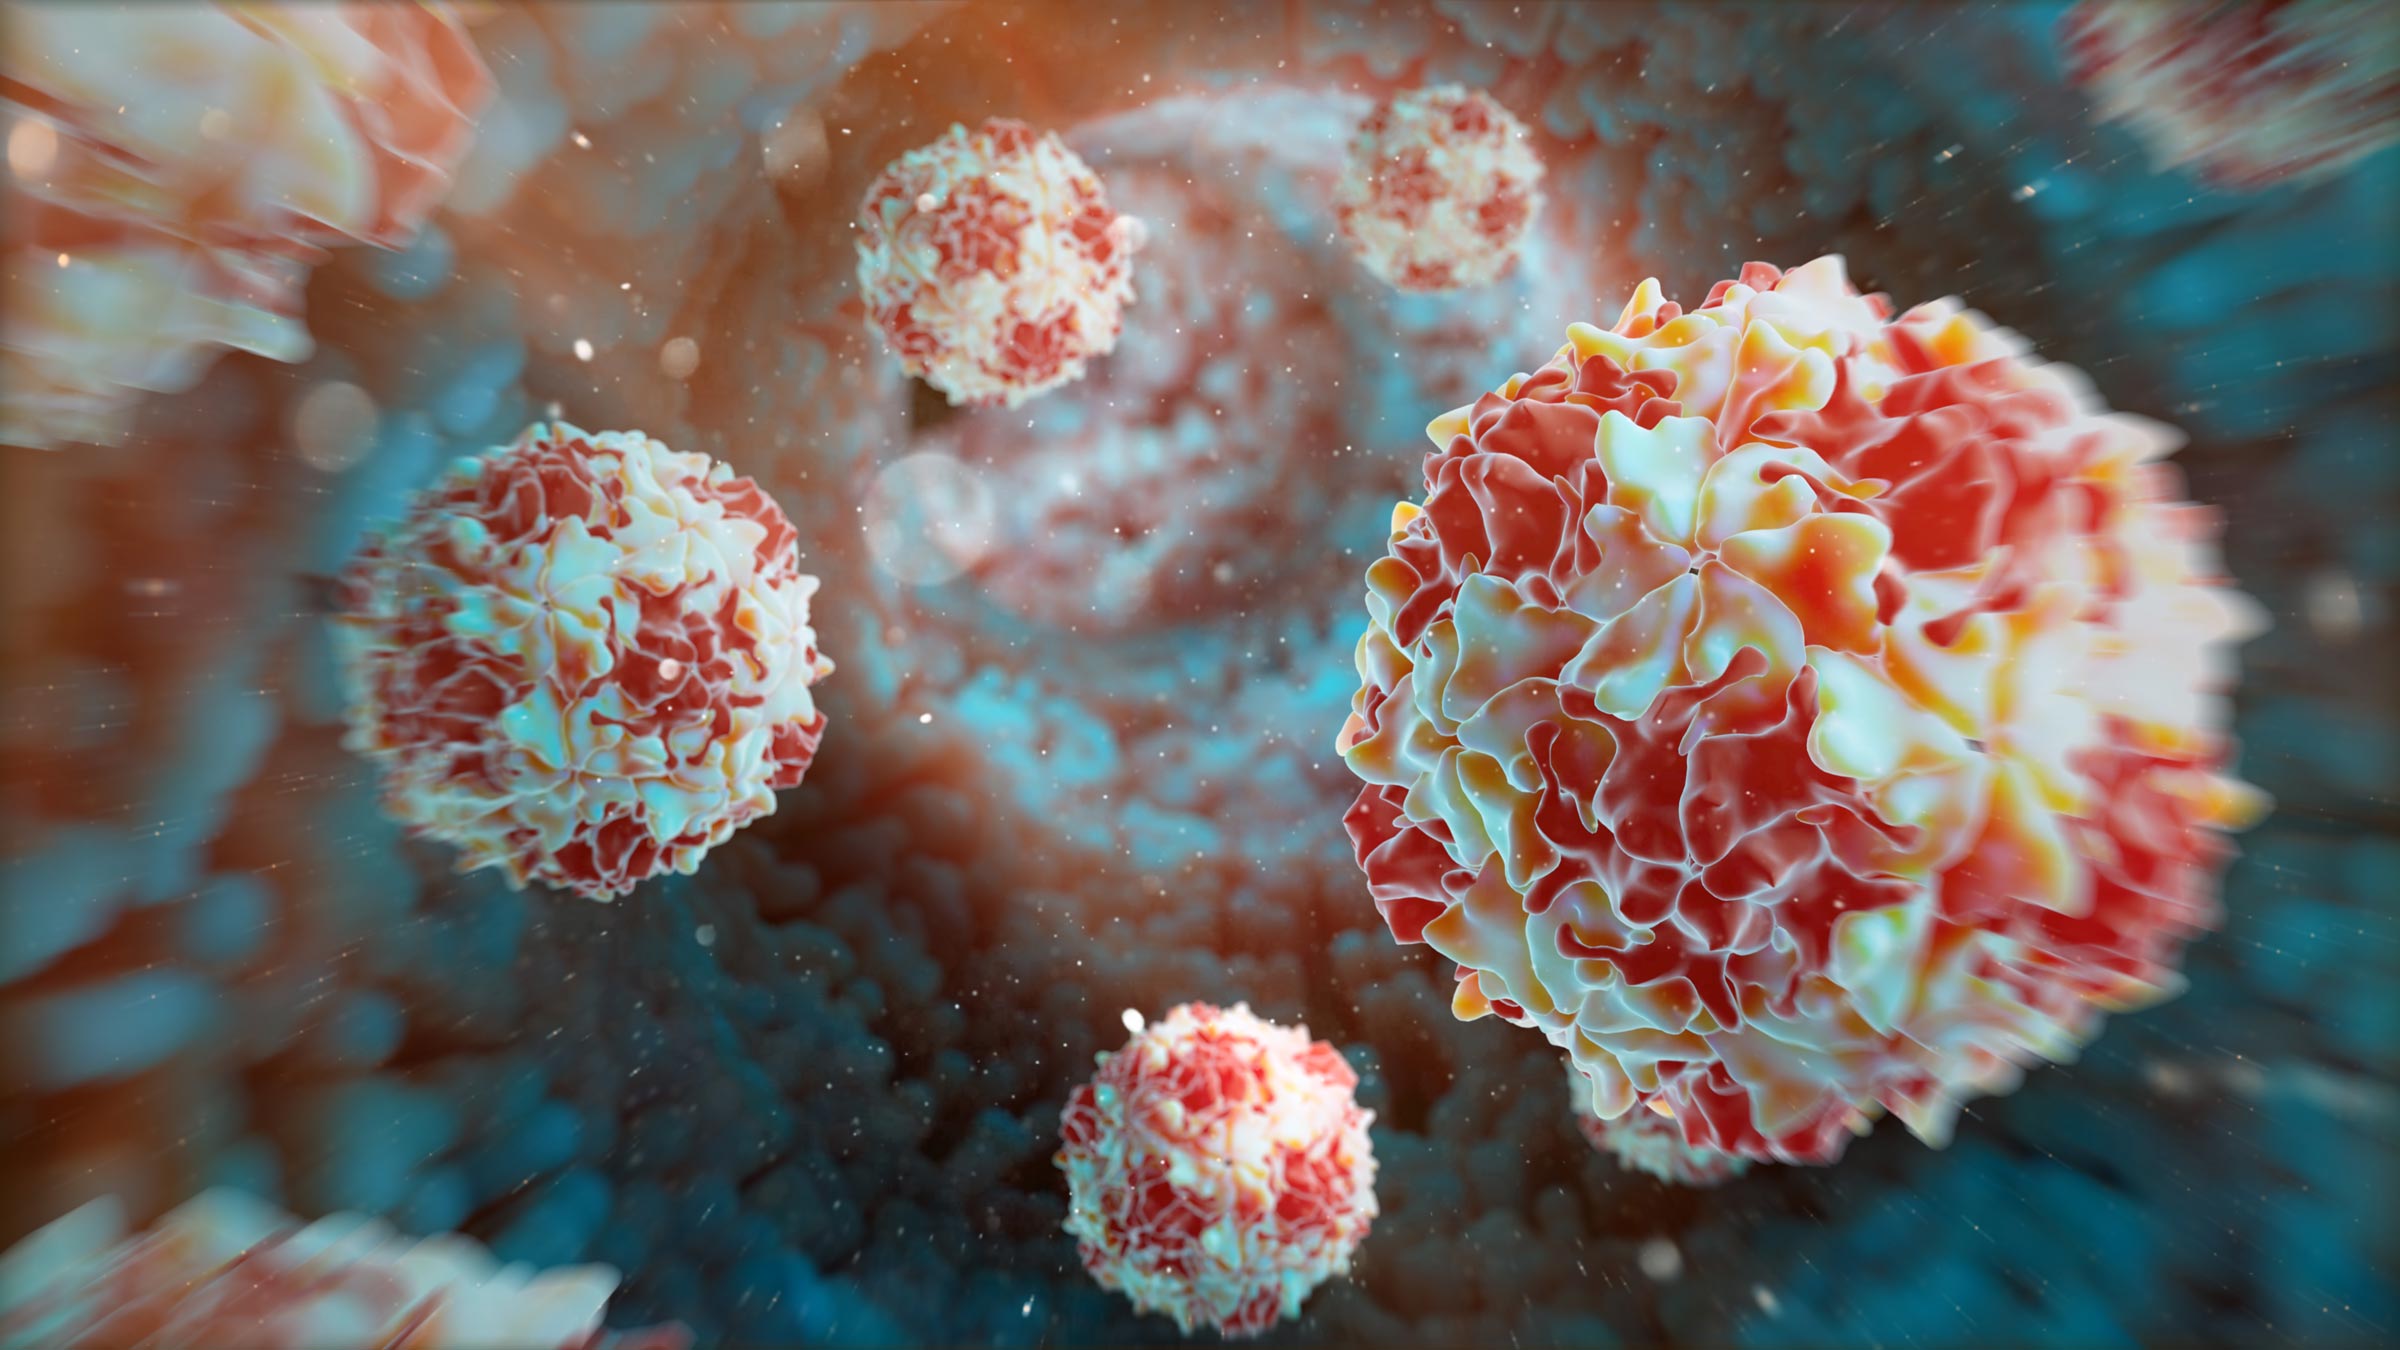 3D rendering of polio virus